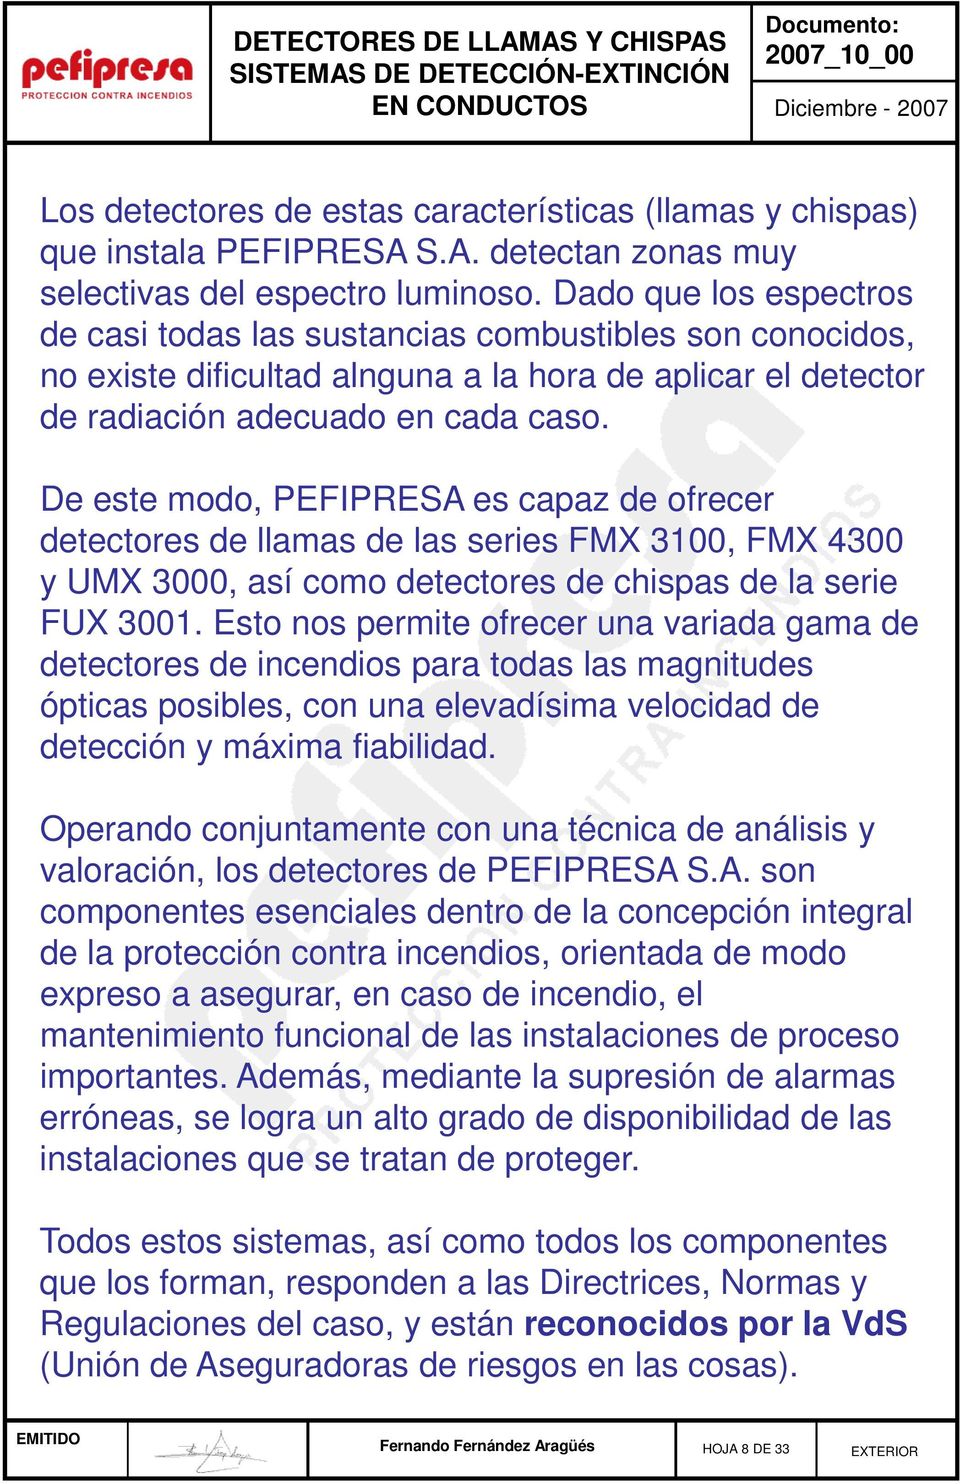 De este modo, PEFIPRESA es capaz de ofrecer detectores de llamas de las series FMX 3100, FMX 4300 y UMX 3000, así como detectores de chispas de la serie FUX 3001.